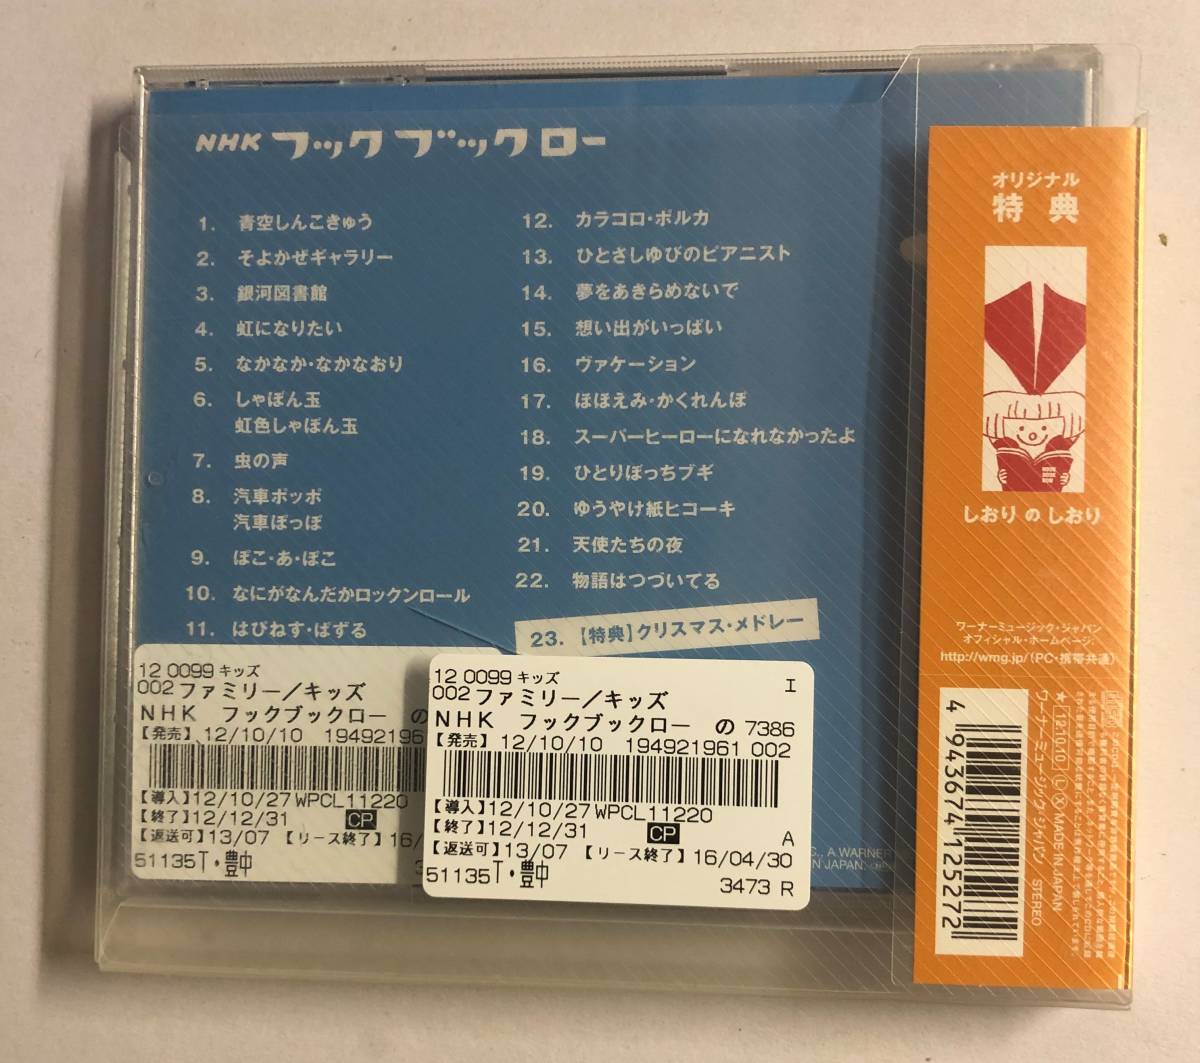 【CD】NHK フックブックロー のんびりいこうよ VARIOUS【レンタル落ち】@CD-10T_画像2